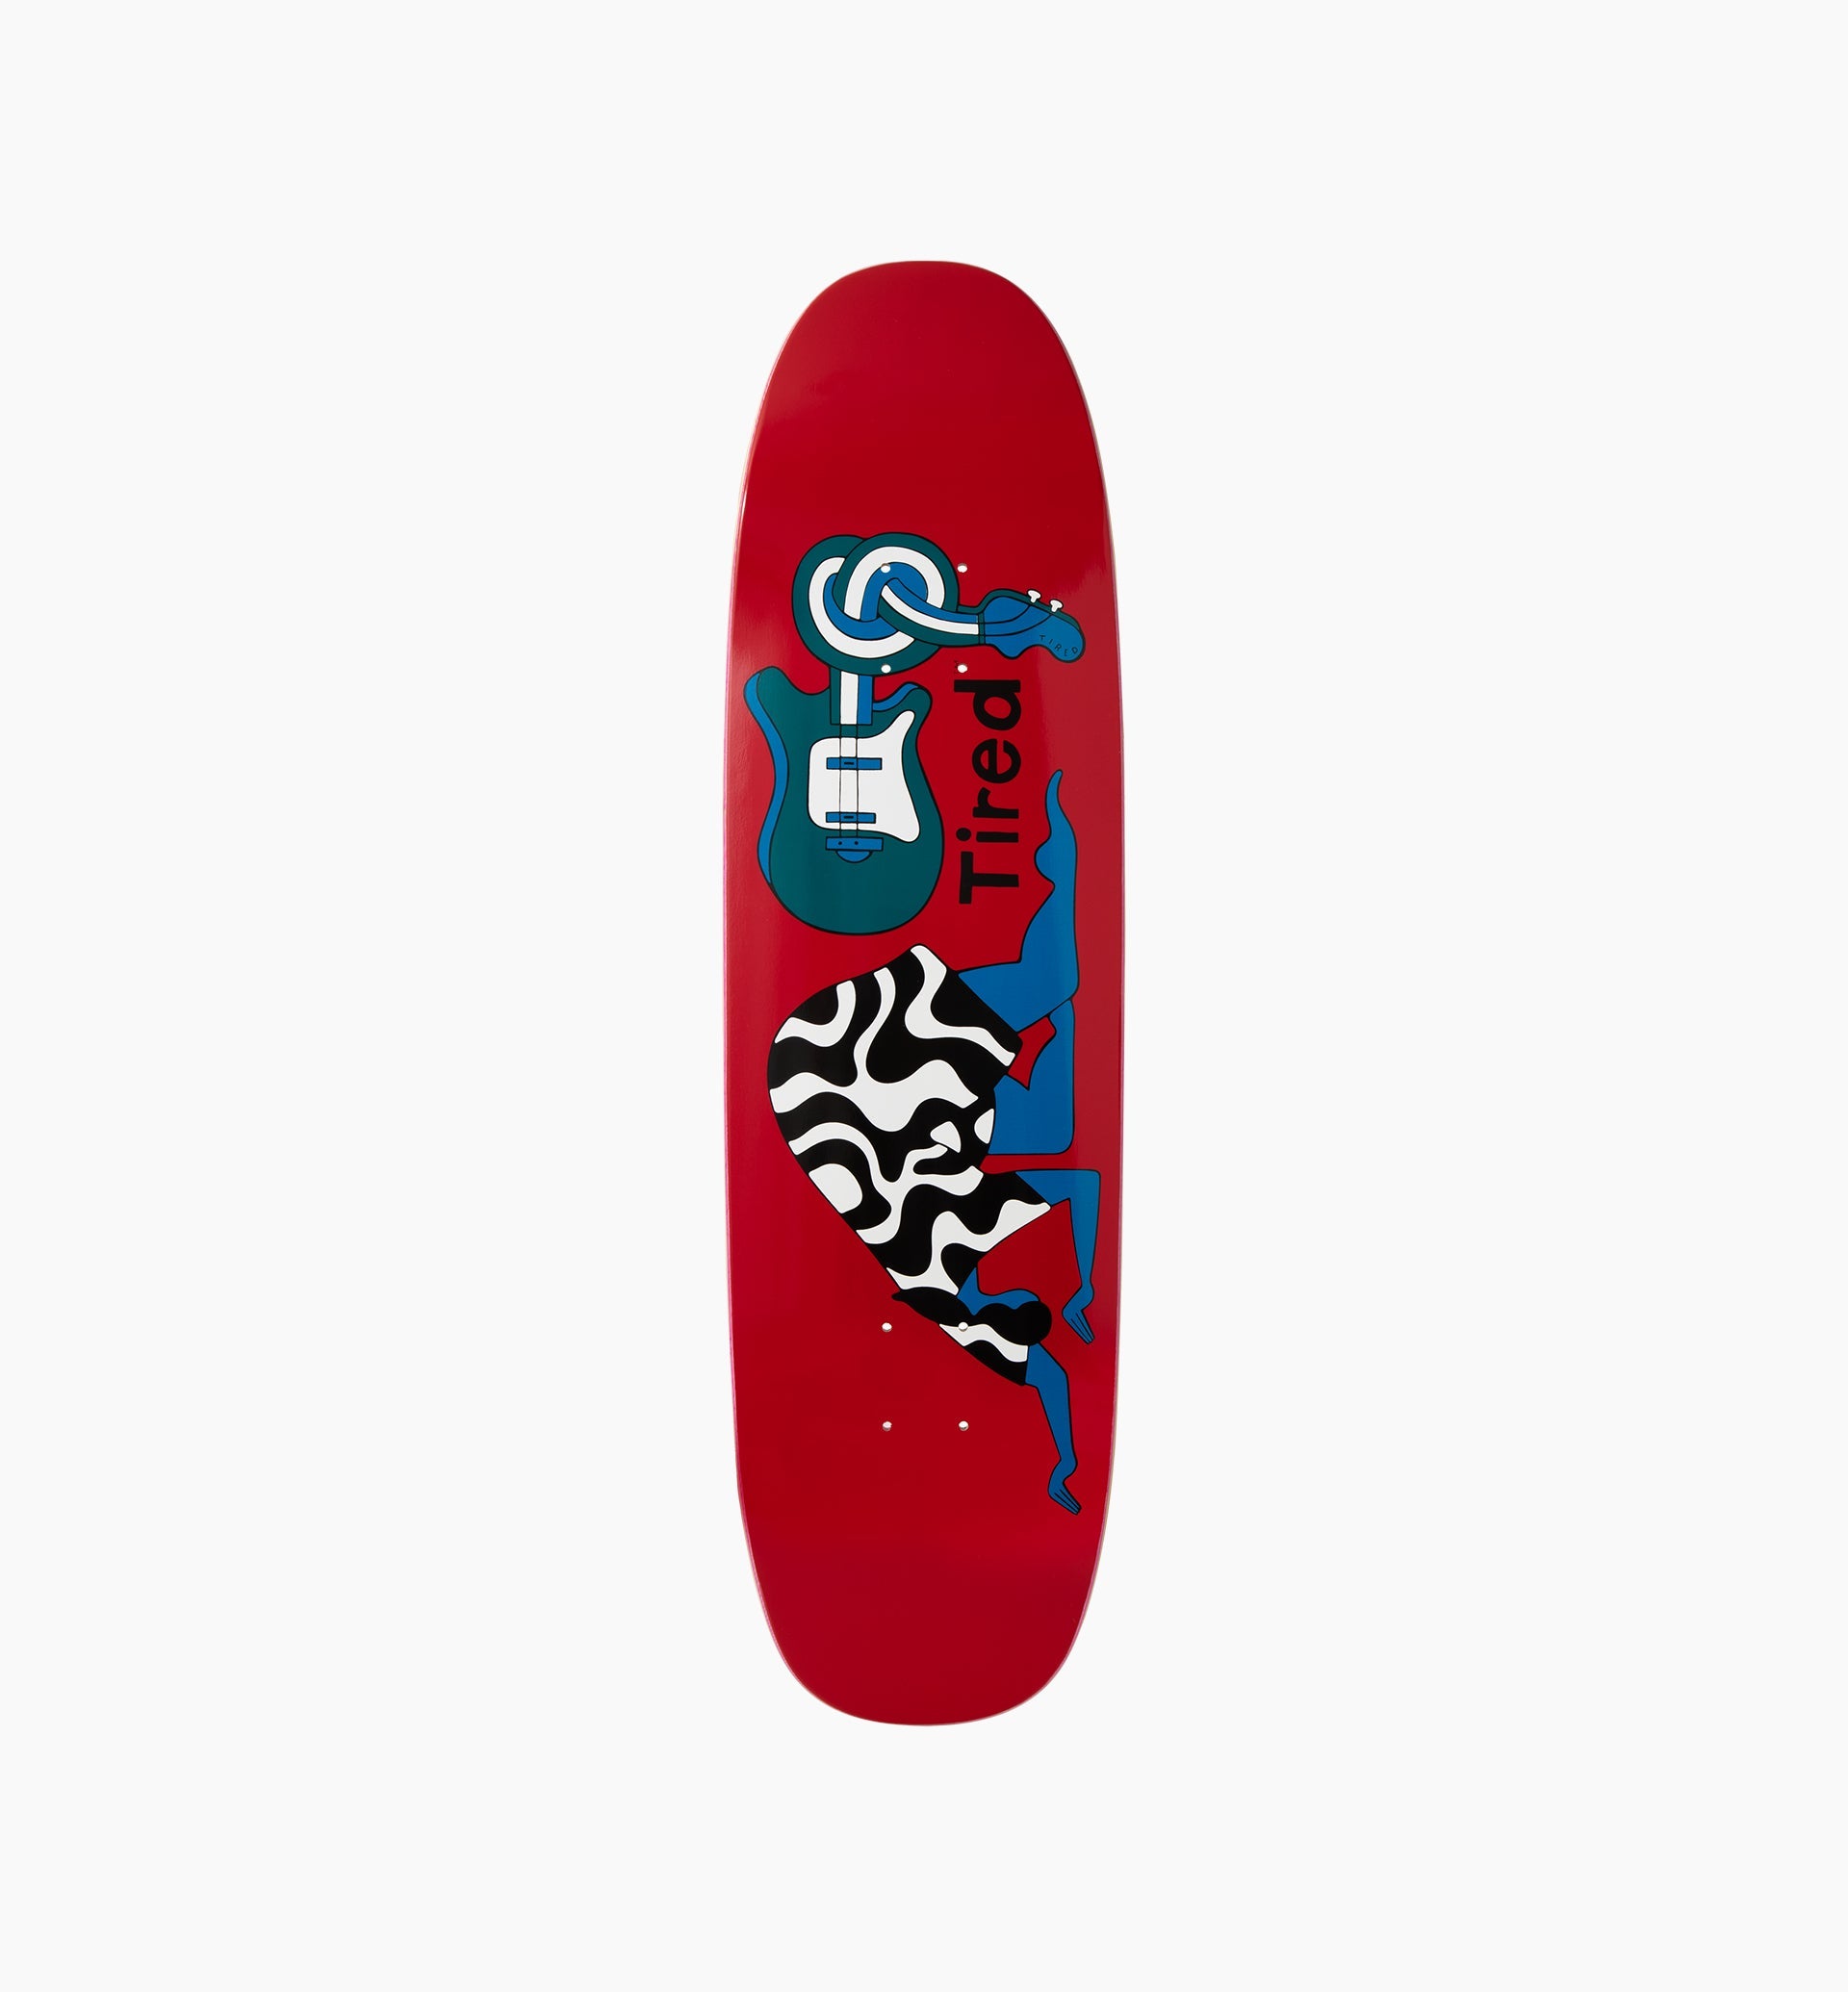 Parra - spinal tap skateboard deck